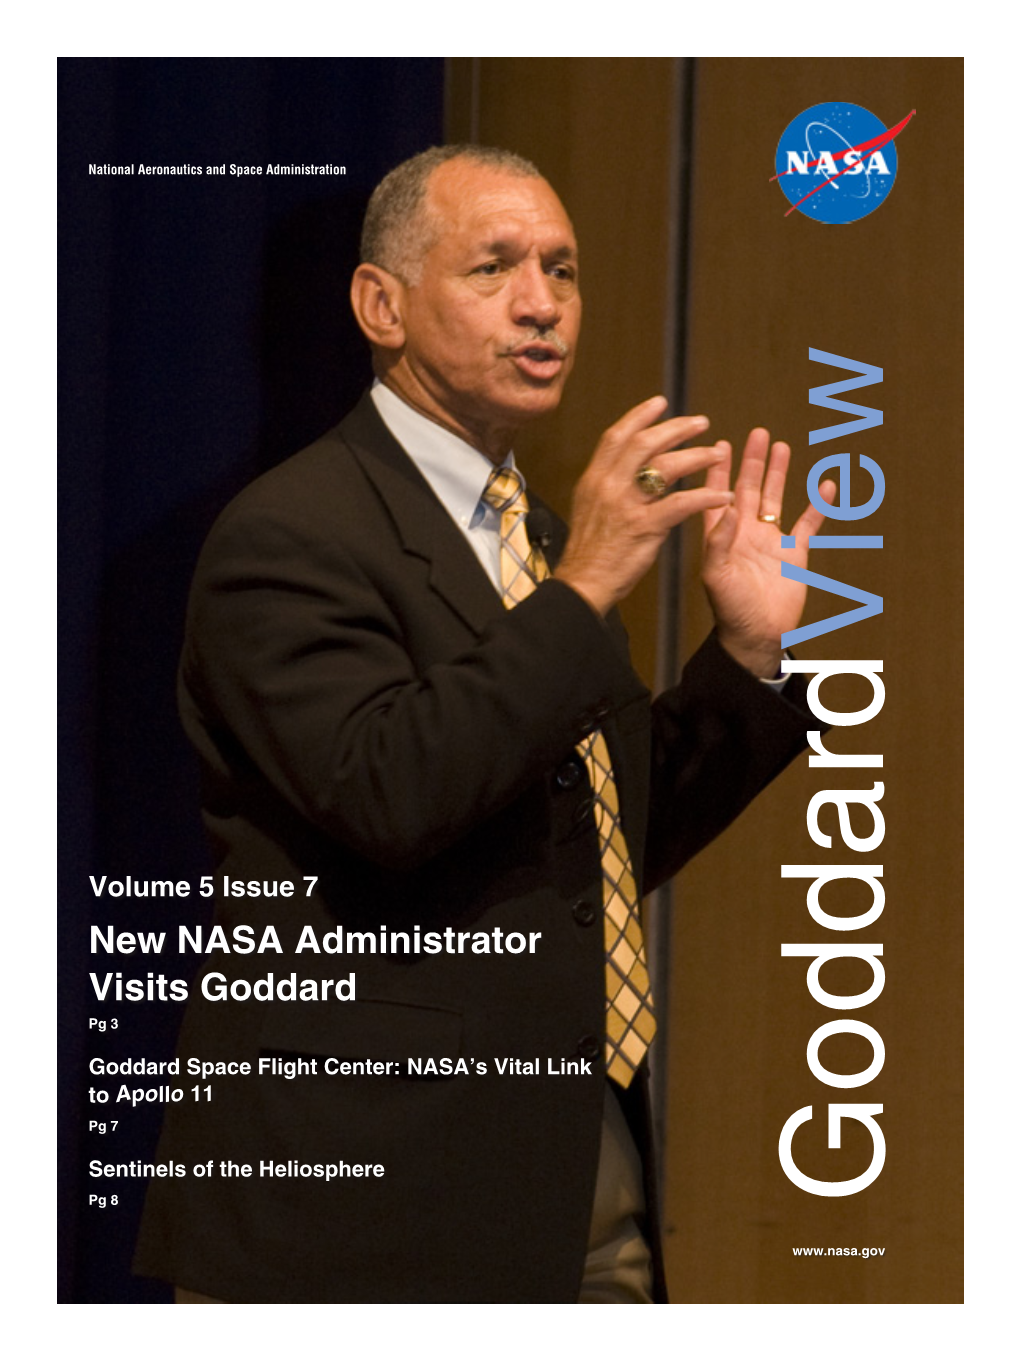 New NASA Administrator Visits Goddard Pg 3